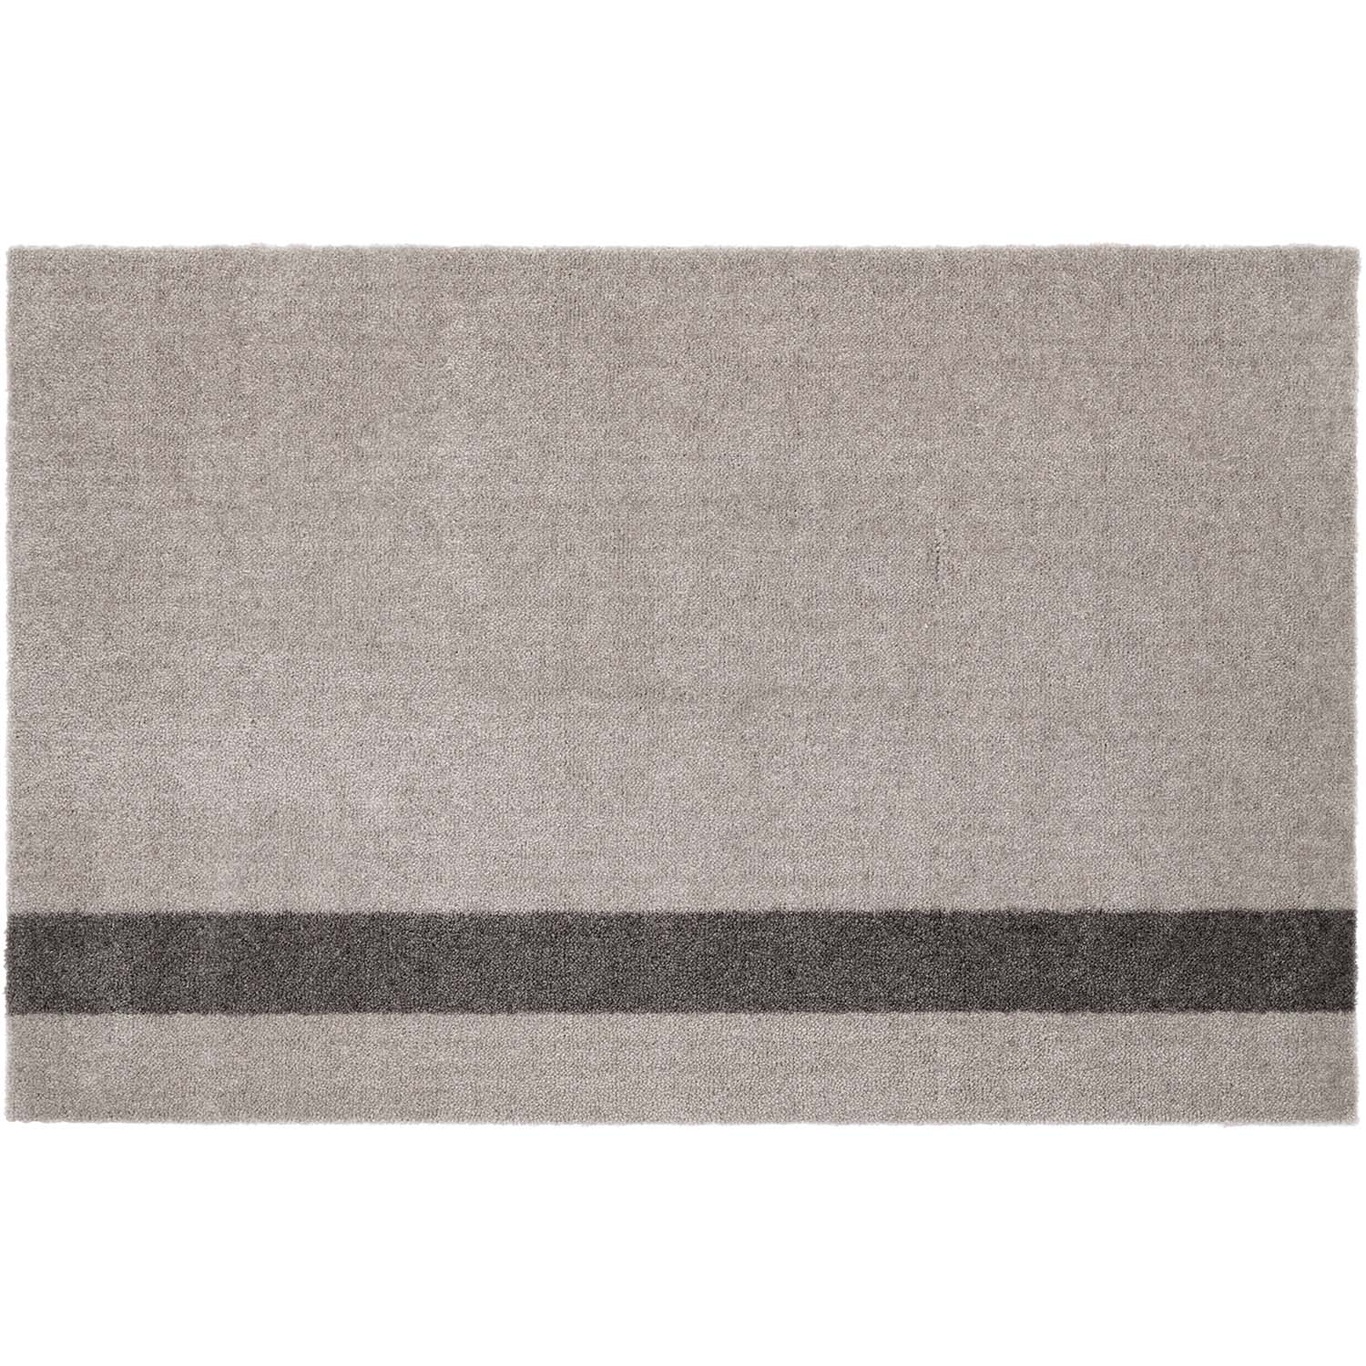 Stripes Matta Ljusgrå / Steel Grey, 60x90 cm